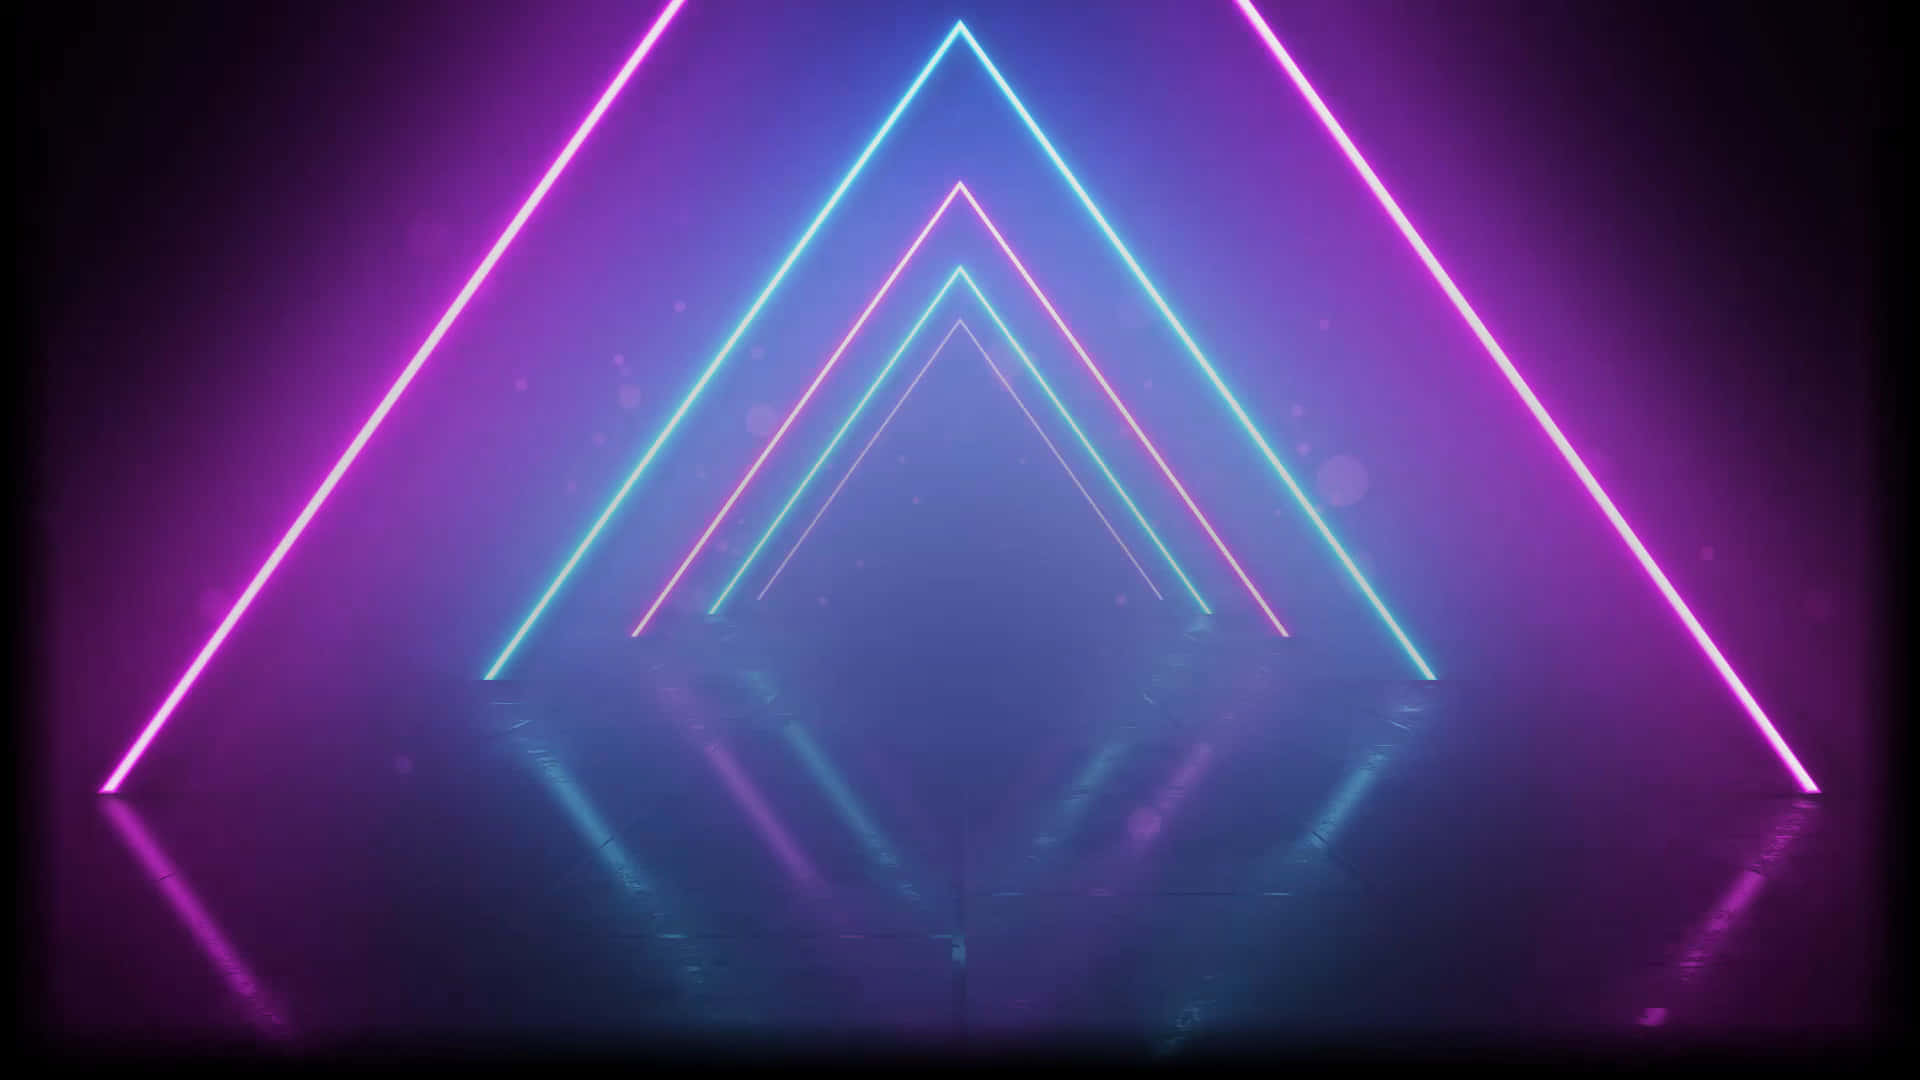 Neon Triangles In The Dark